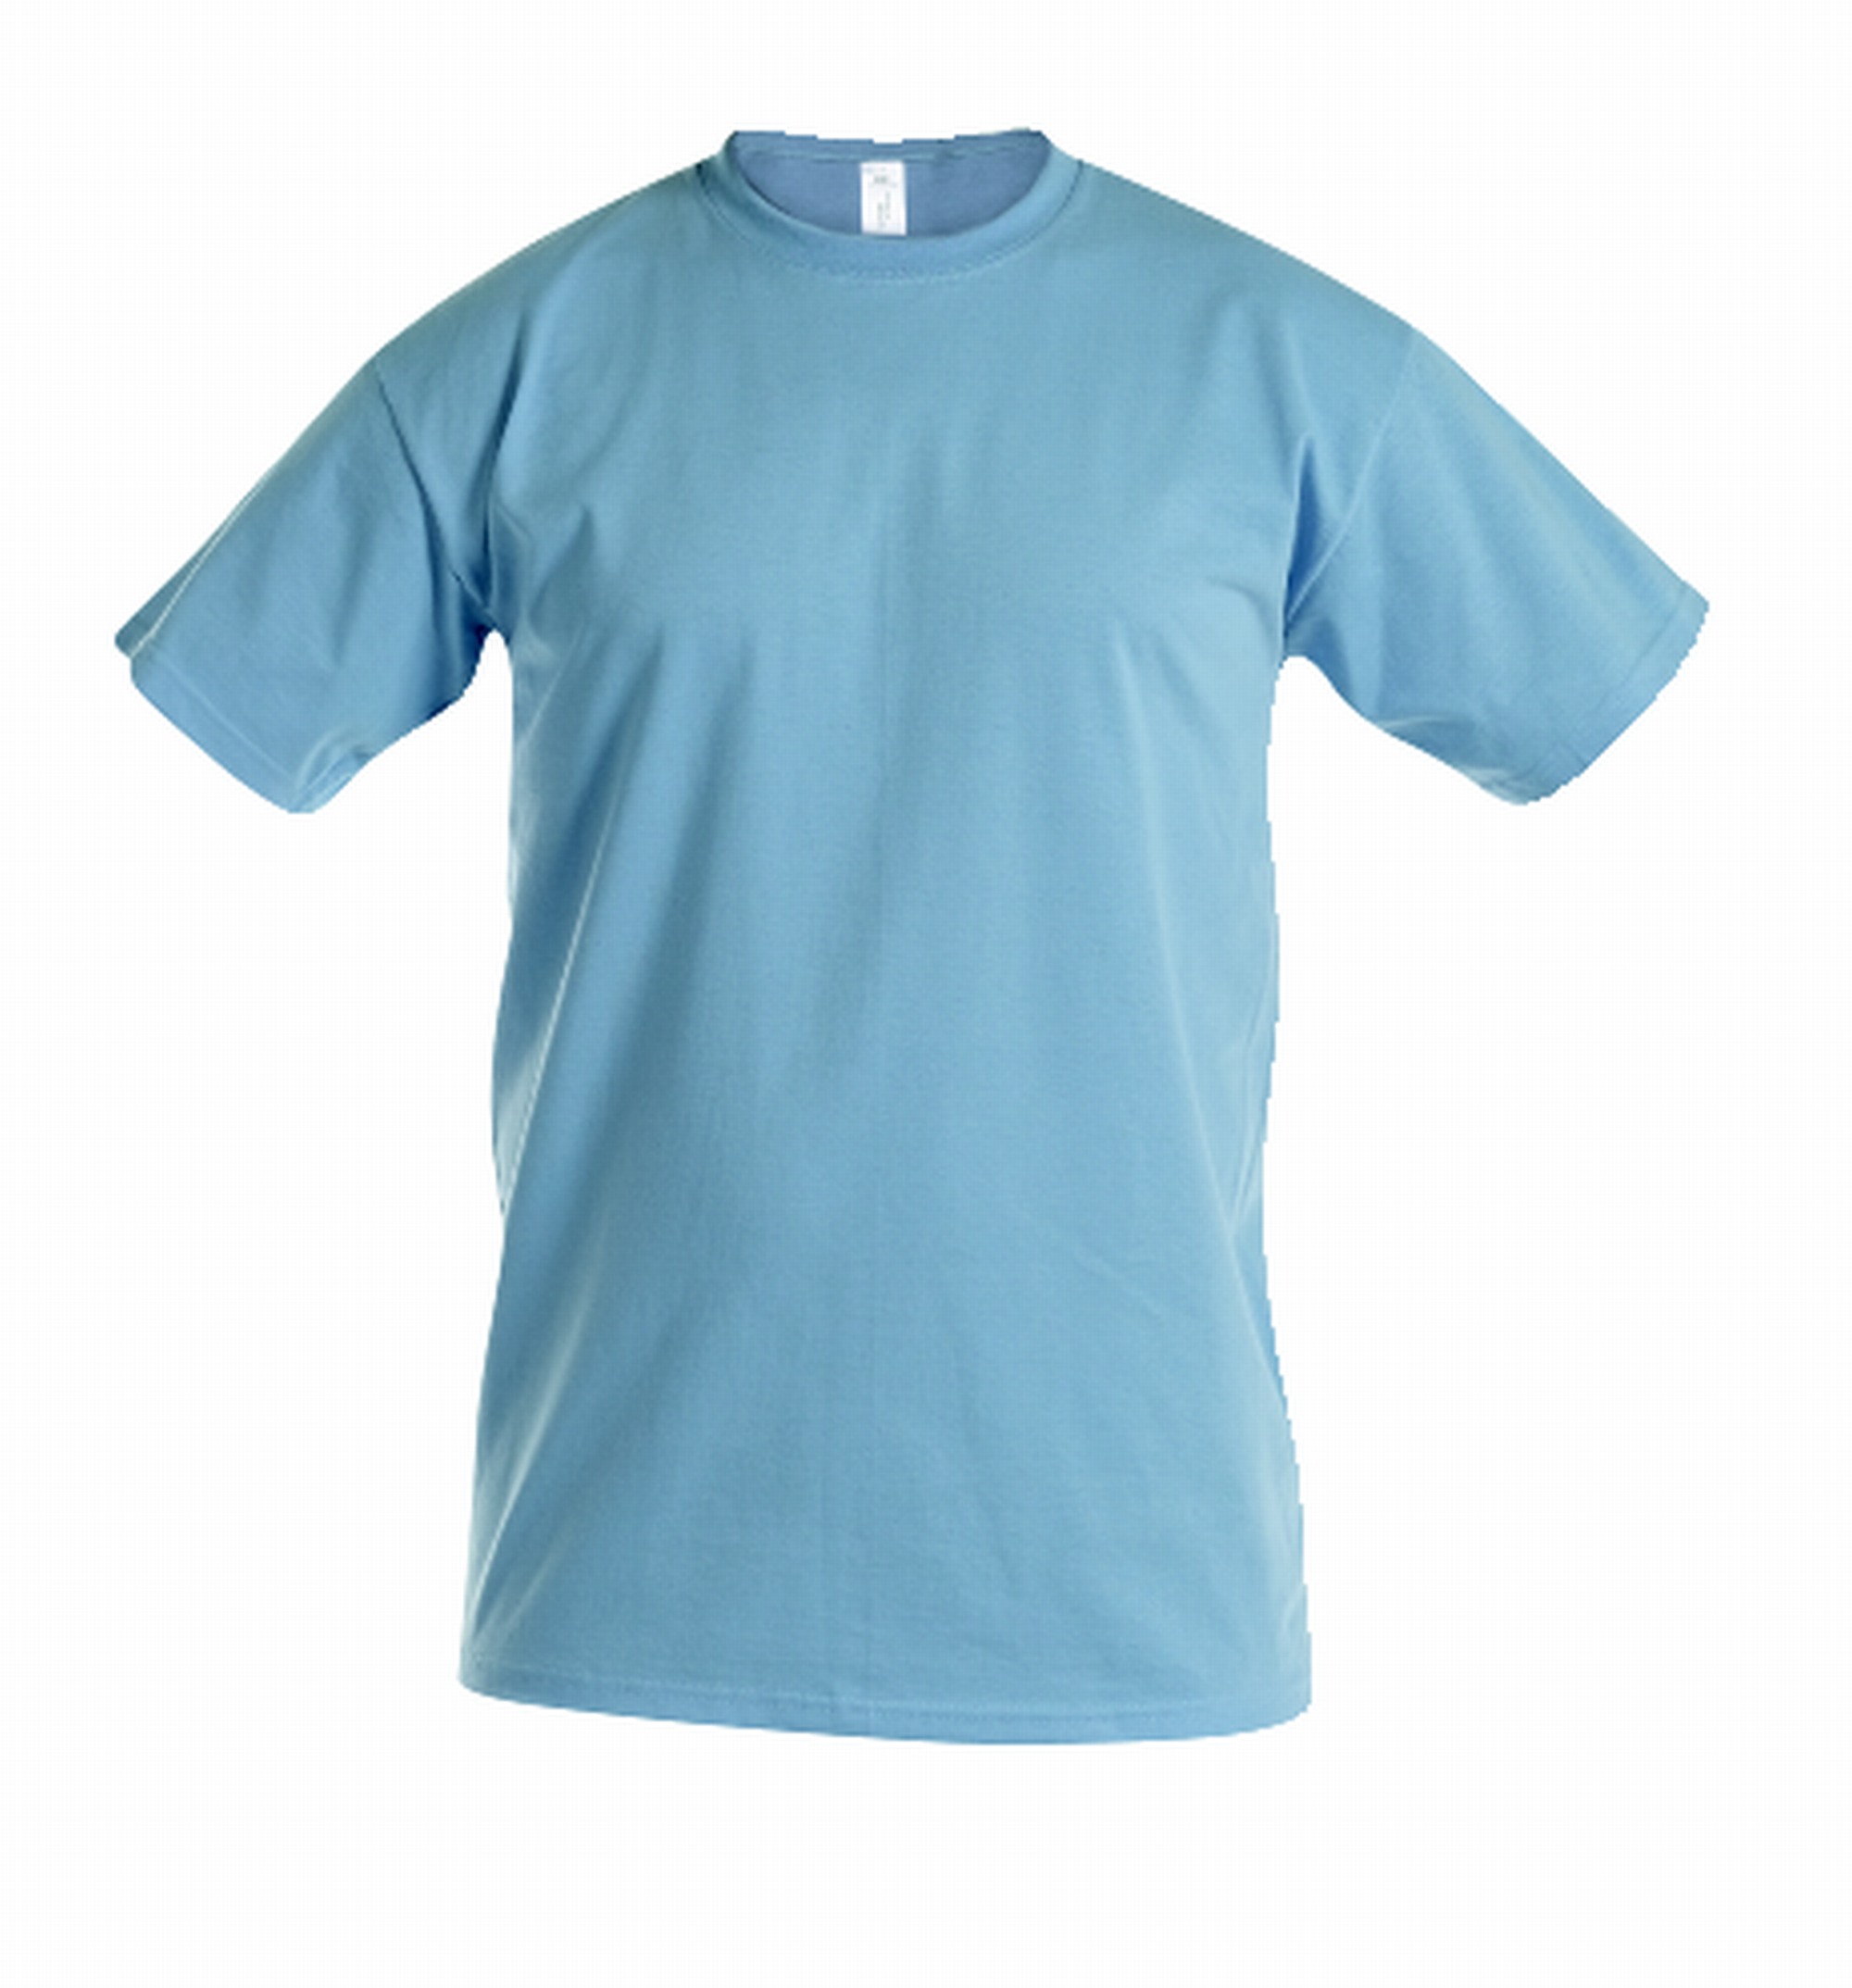 REINDL | Herren T-Shirt Fruit Of The Loom | Arbeitskleidung &  Arbeitsschutzartikel von Reindl